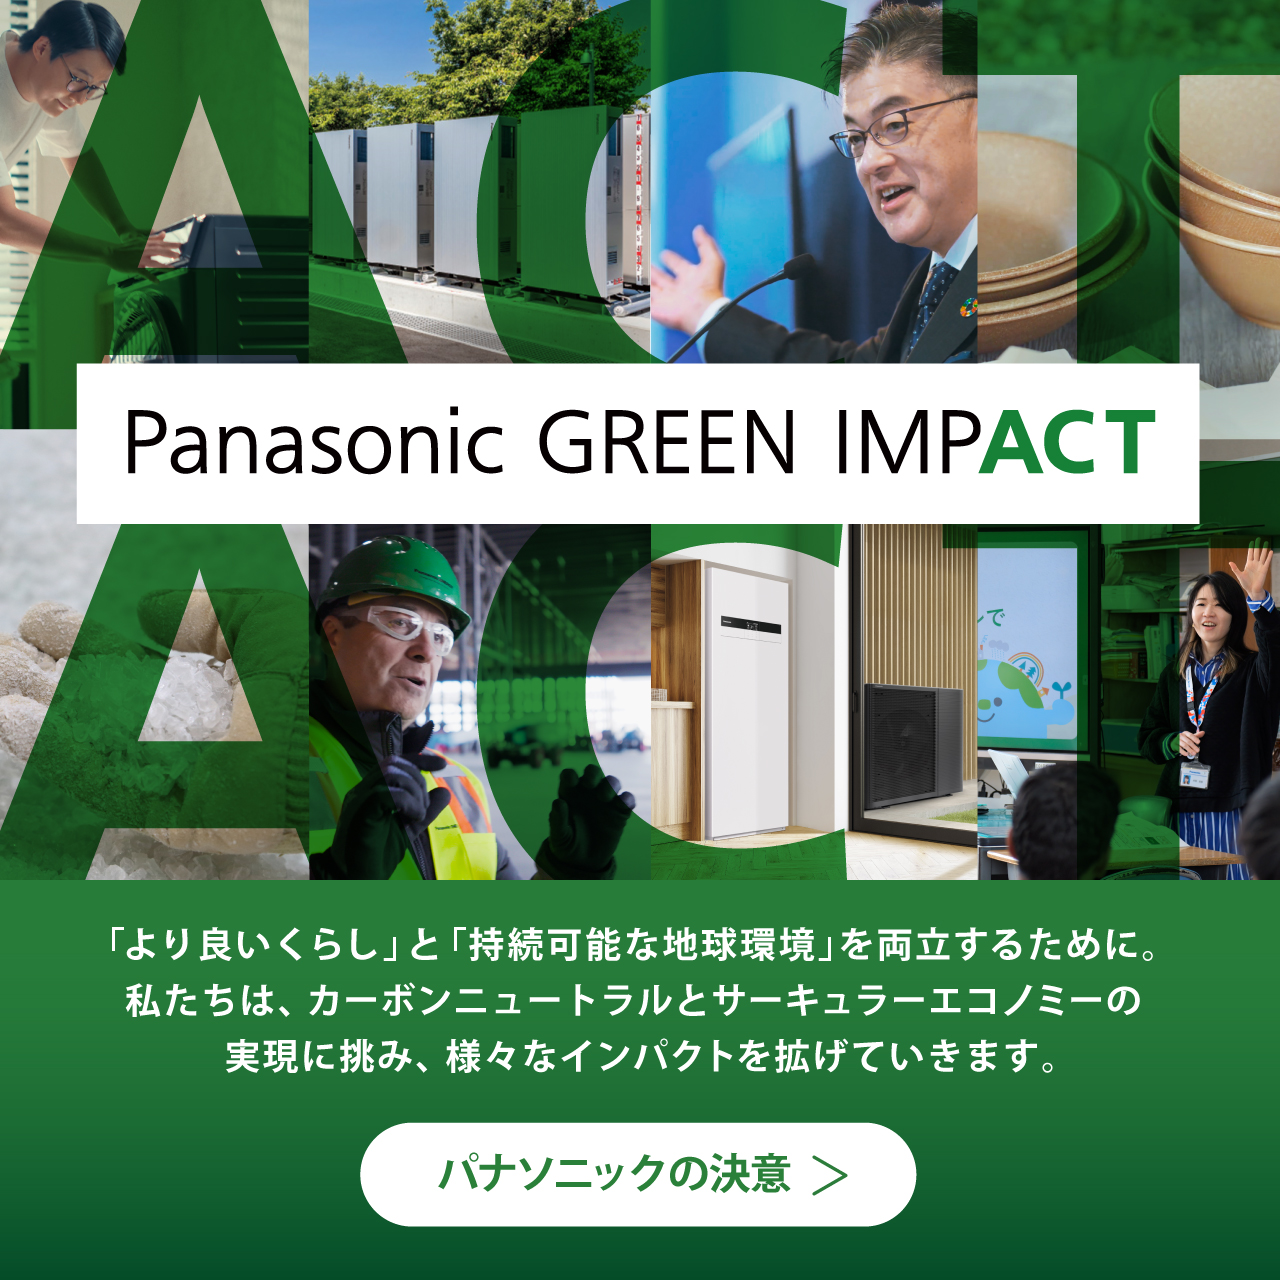 Panasonic GREEN IMPACT 「より良いくらし」と 「持続可能な地球環境」を両立するために。 私たちは、カーボンニュートラルと サーキュラーエコノミーの実現に挑み、様々なインパクトを拡げていきます。 パナソニックの決意​